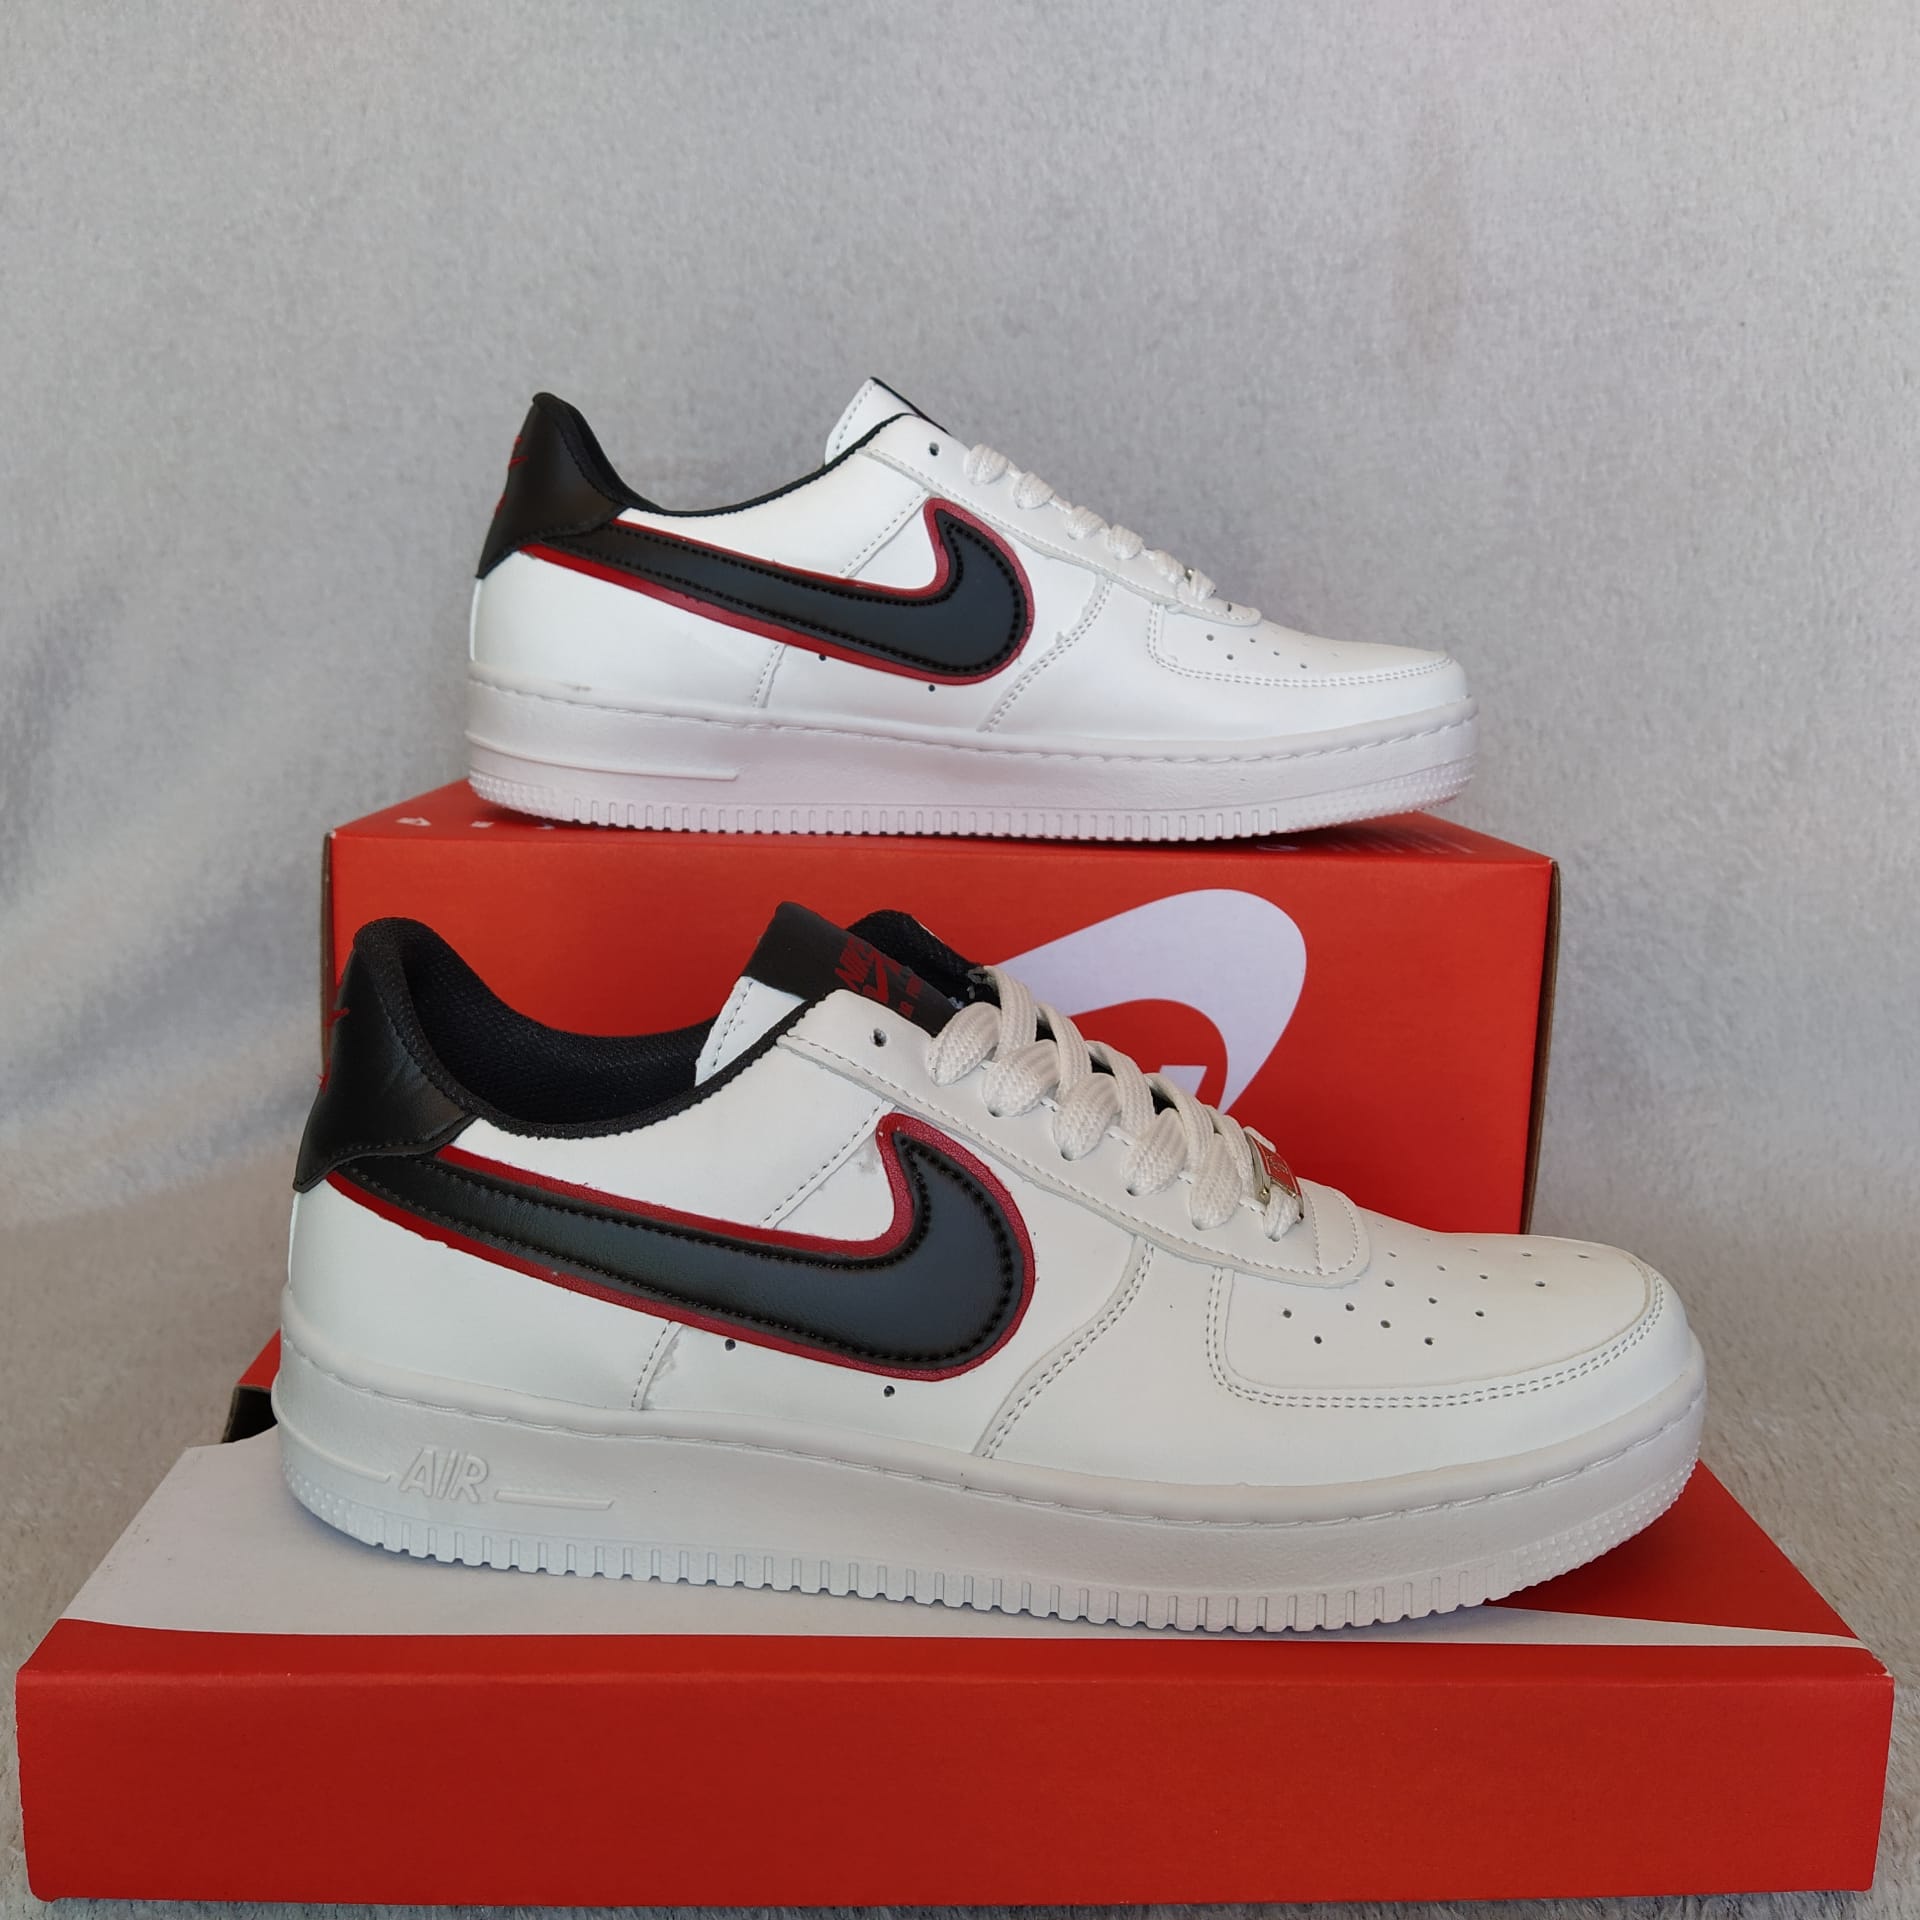 35,00€ - Sapatilhas Nike Air Branco com preto e Vermelho